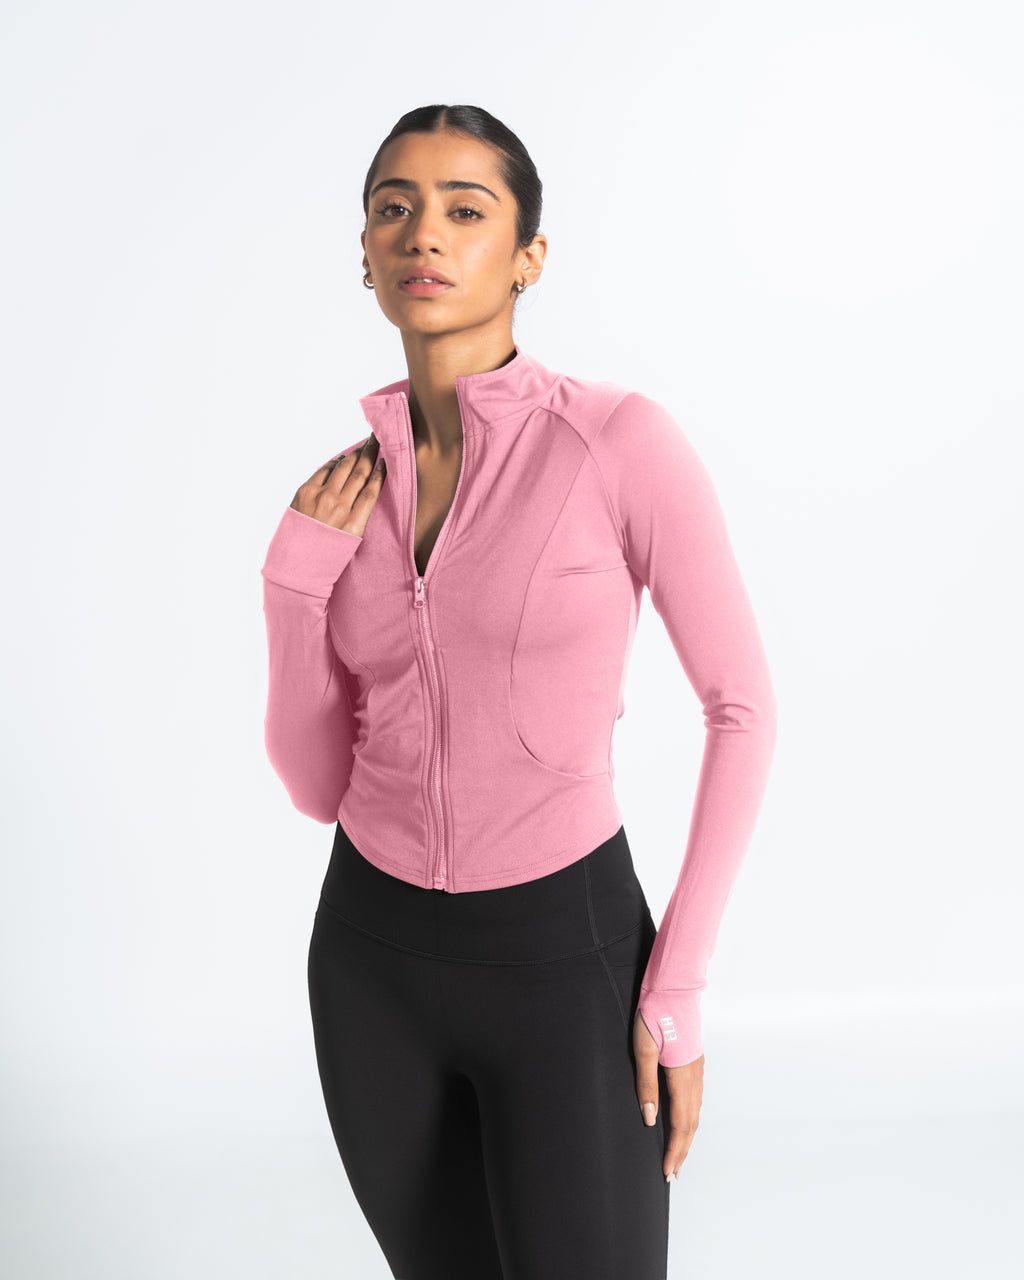 ButterBod Longline Sports Bra - Bubblegum Pink – Ela Wear